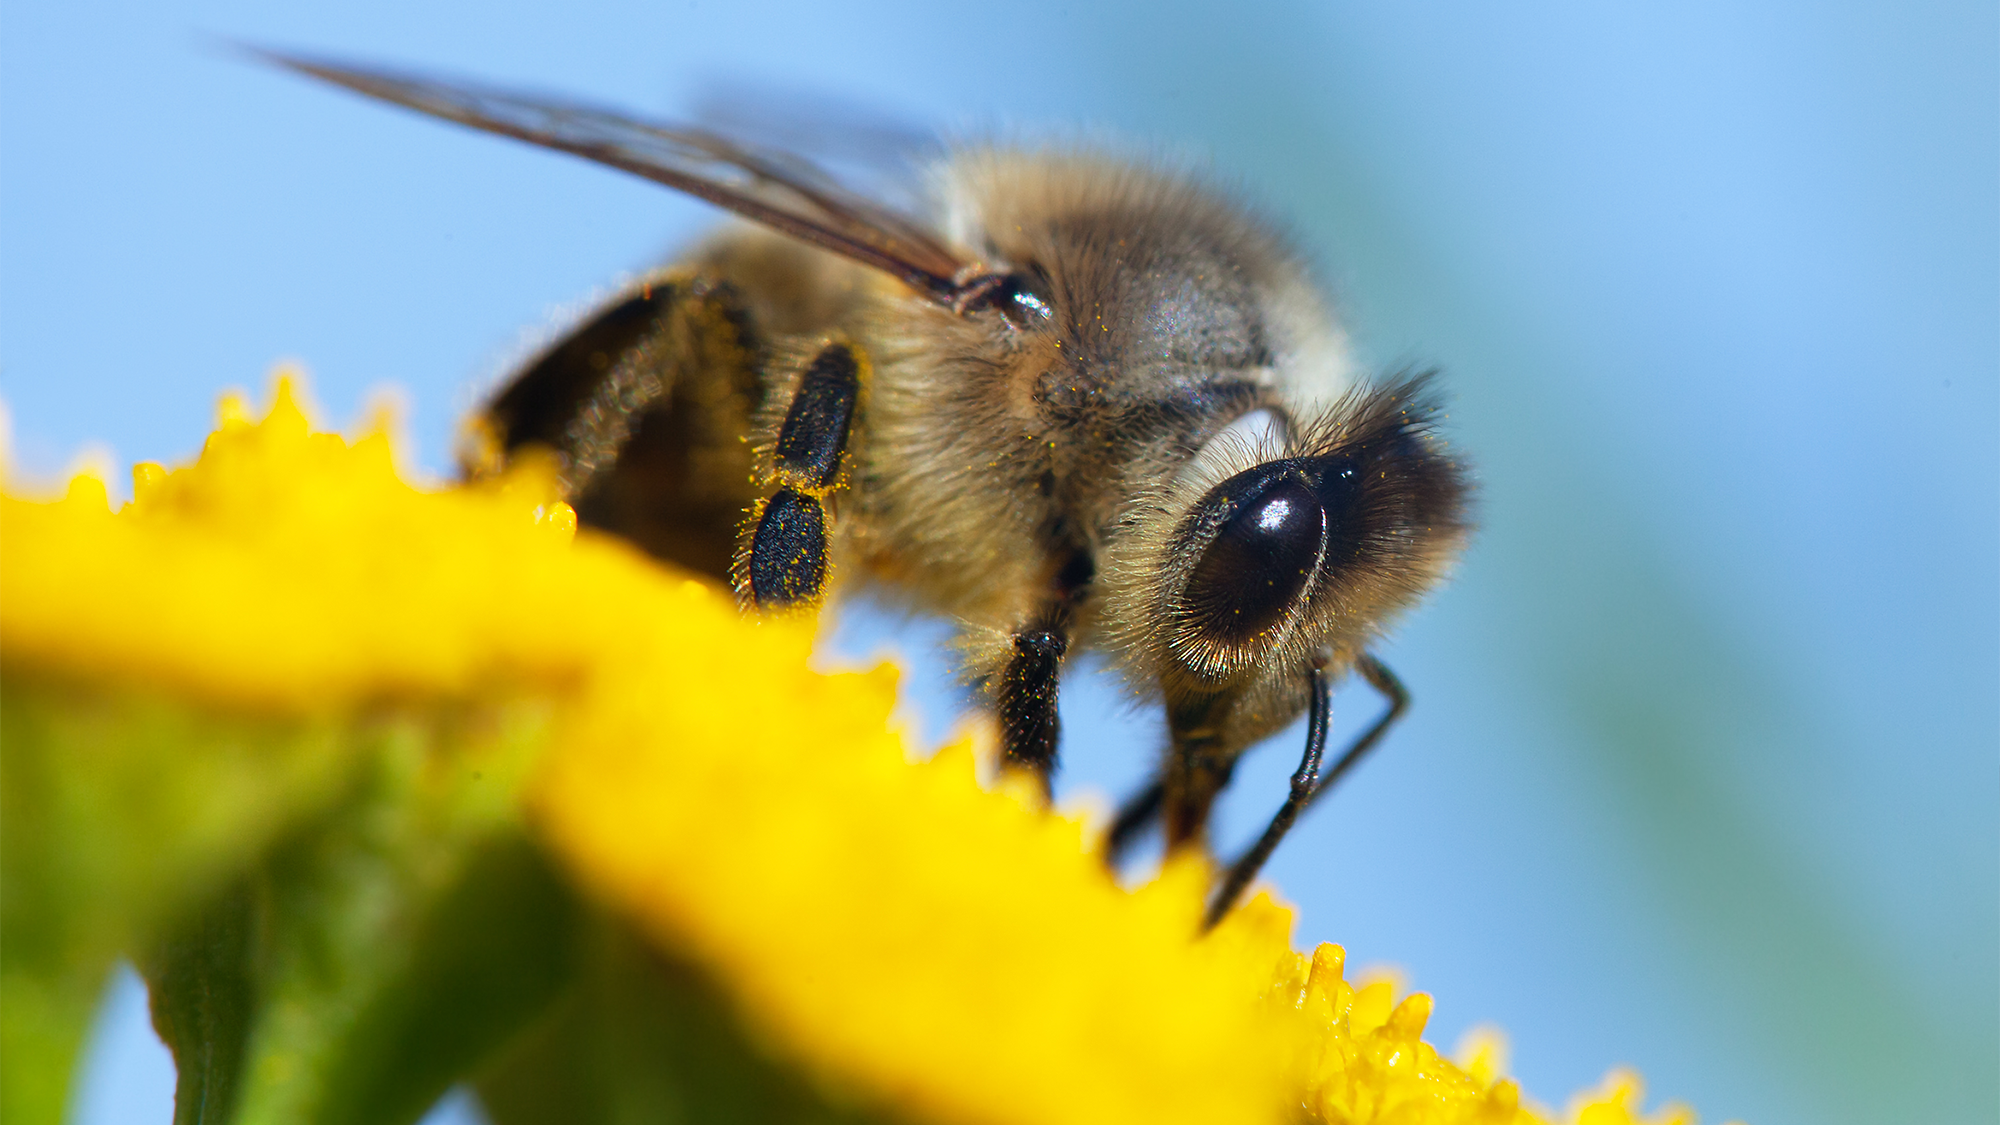 A honeybee pollenating a yellow flower.